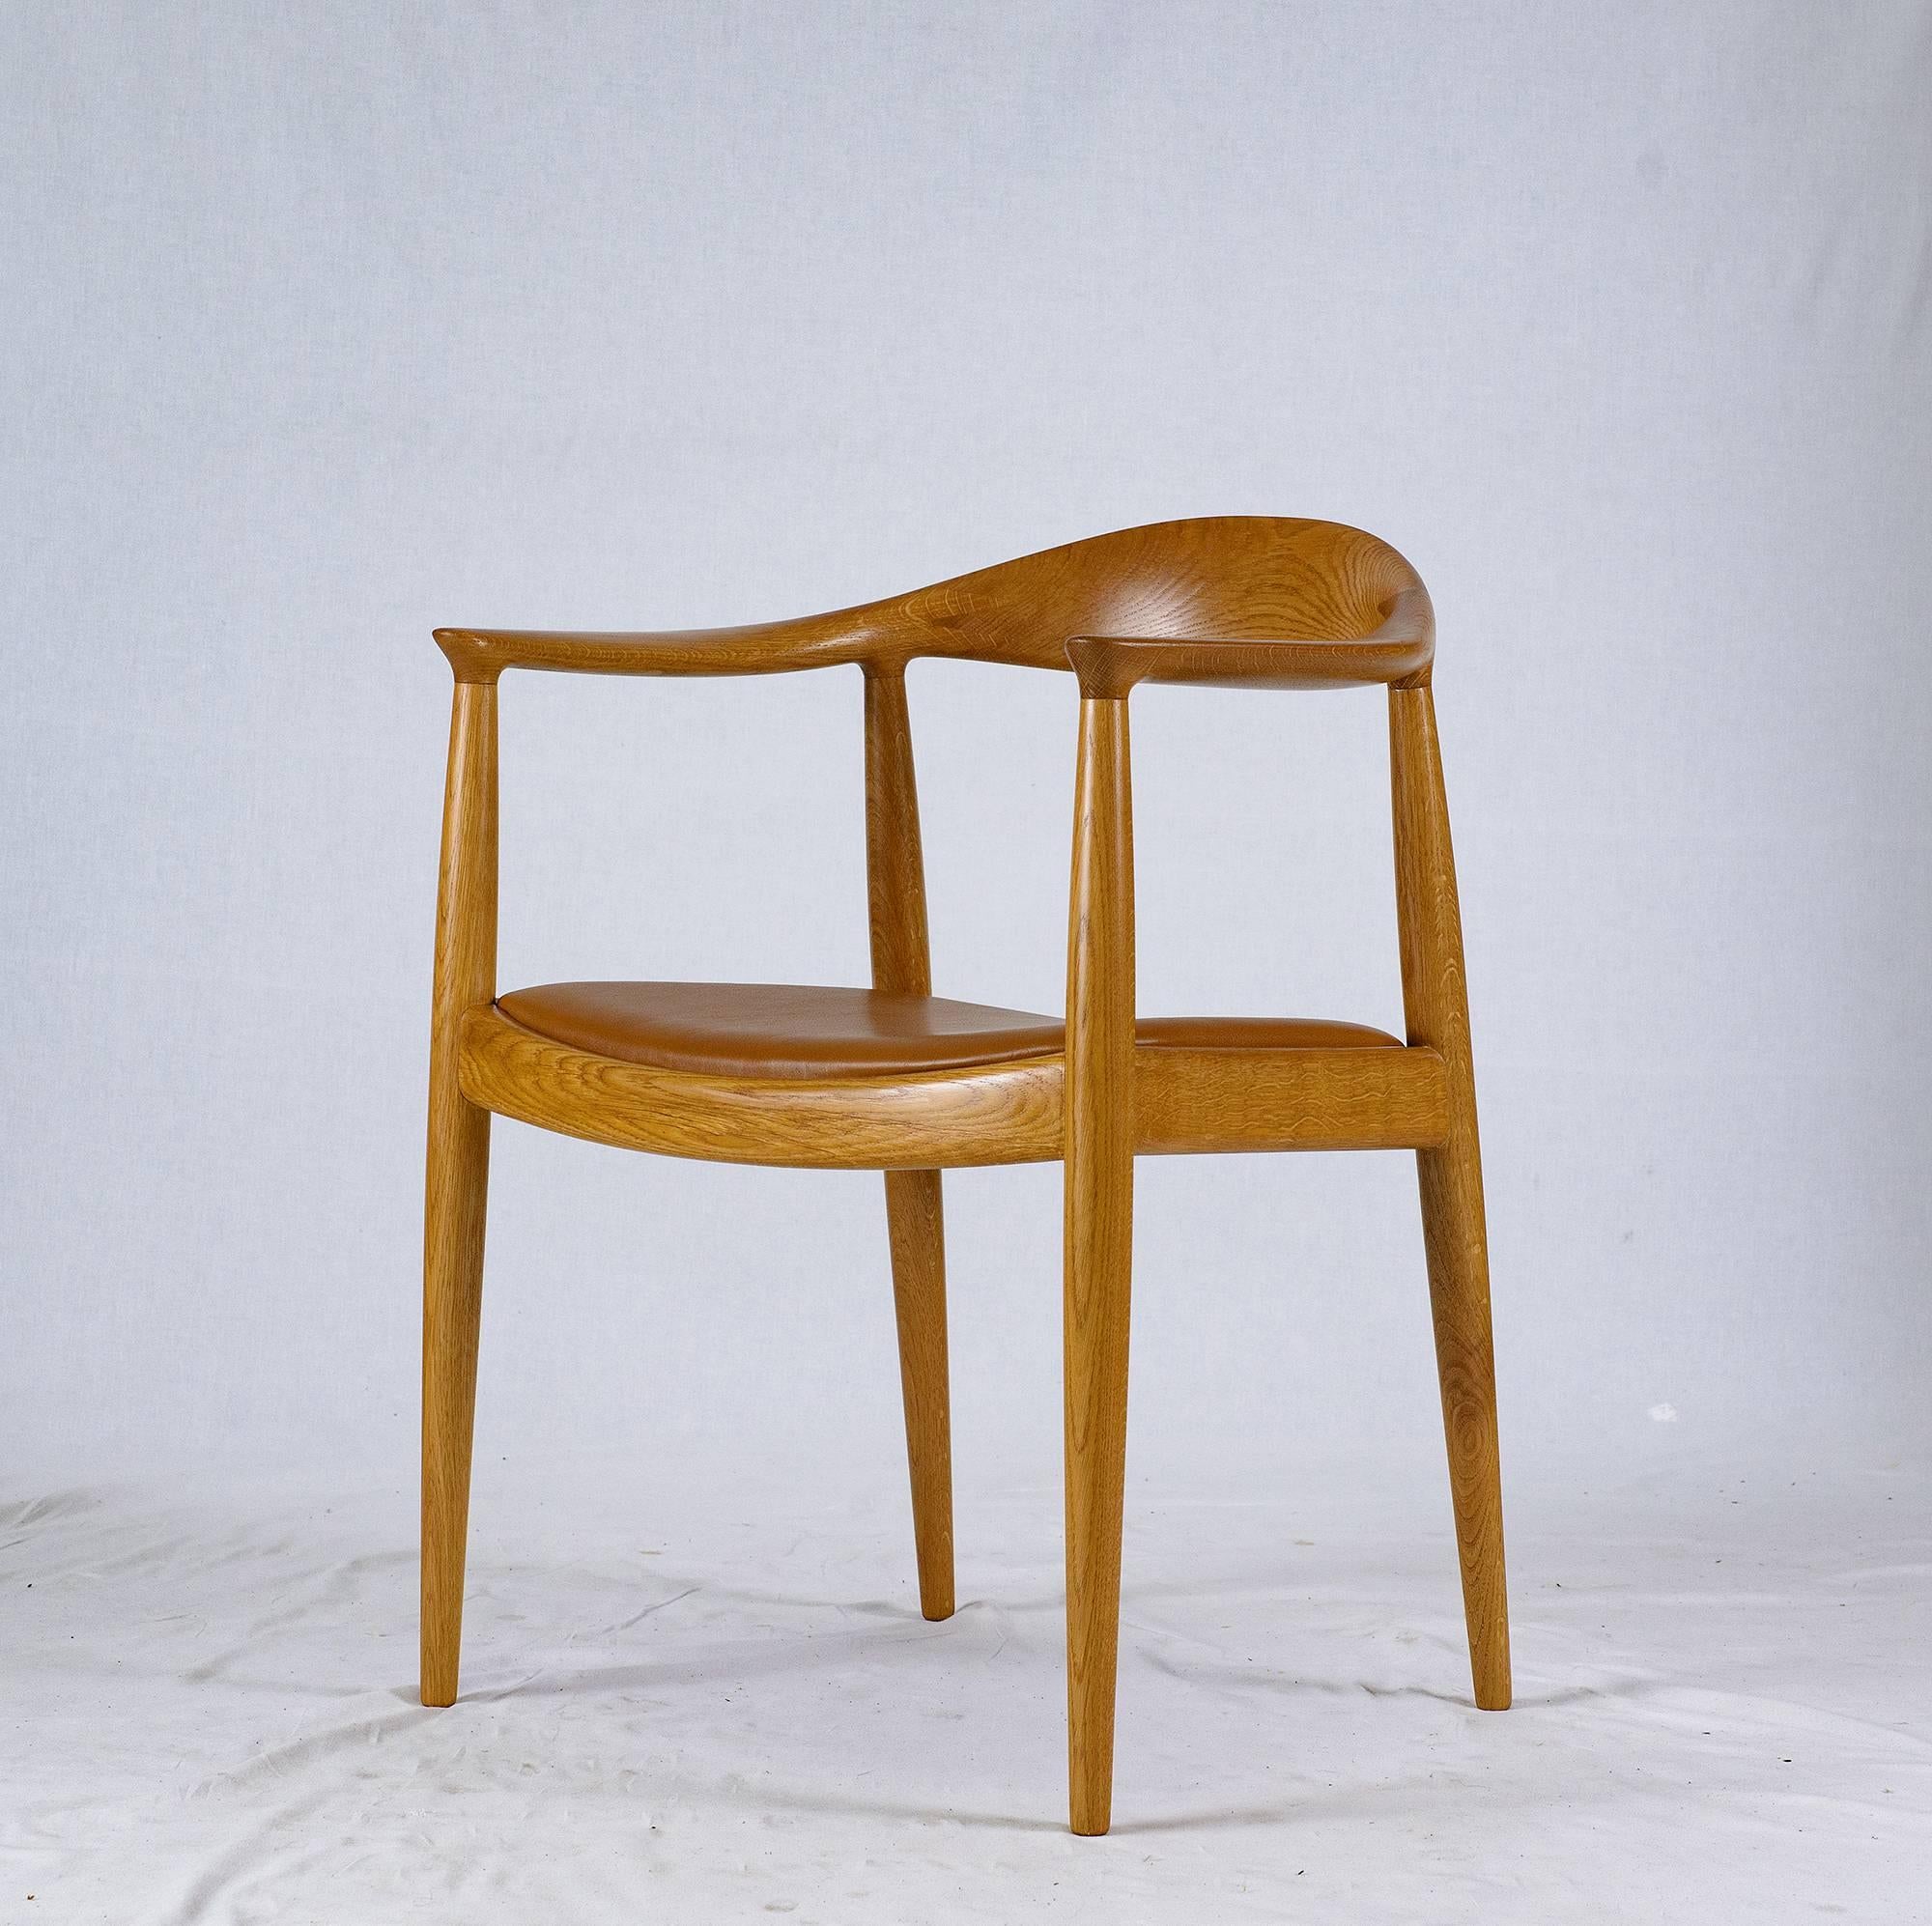 Ensemble de huit fauteuils Hans Wegner JH-503 conçus en 1949 et produits par Johannes Hansen.   NOTE : LE PRIX EST POUR CHAQUE CHAISE